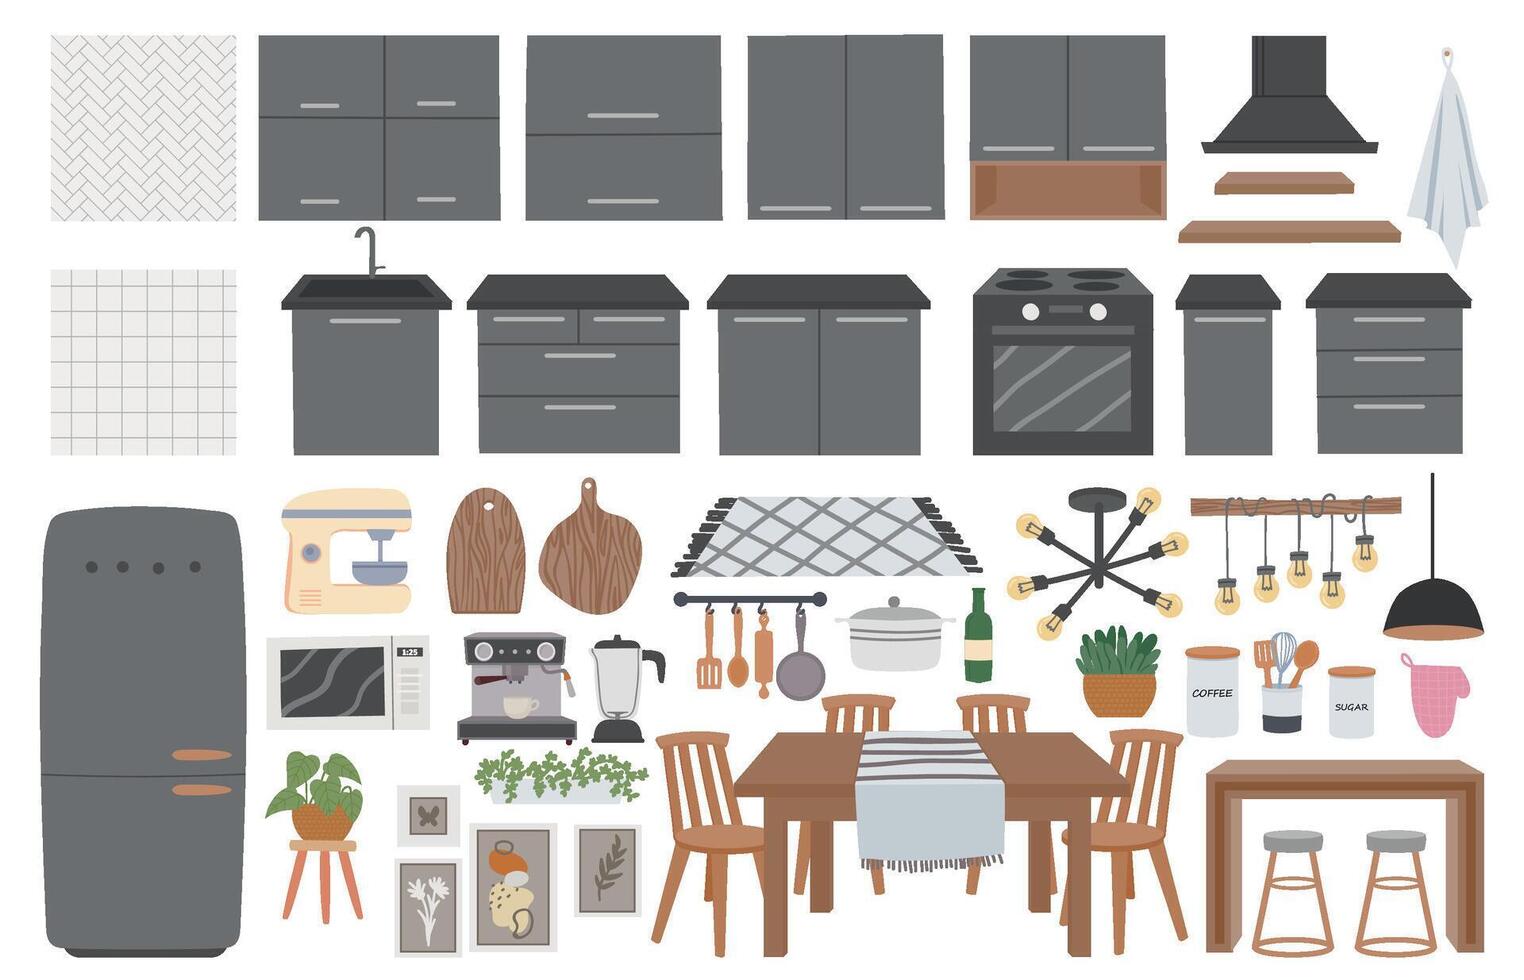 knus keuken meubilair, gebruiksvoorwerpen, decoratie en Koken huishoudelijke apparaten. hygge koken kamer interieur elementen, tafel en keuken kabinet vector reeks